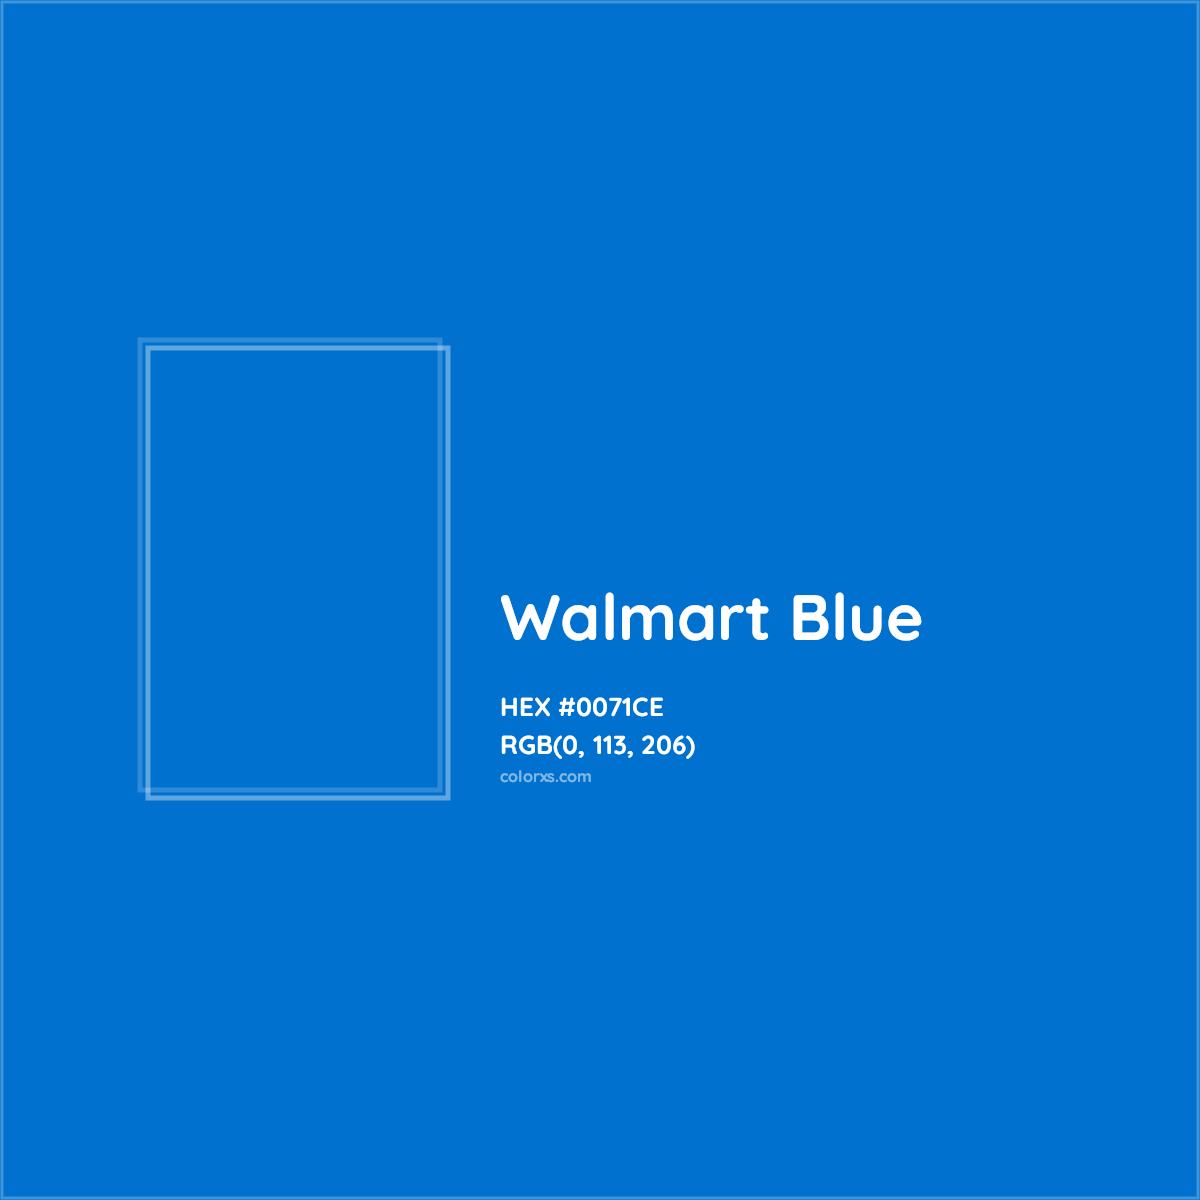 about-walmart-blue-color-color-codes-similar-colors-and-palettes-colorxs